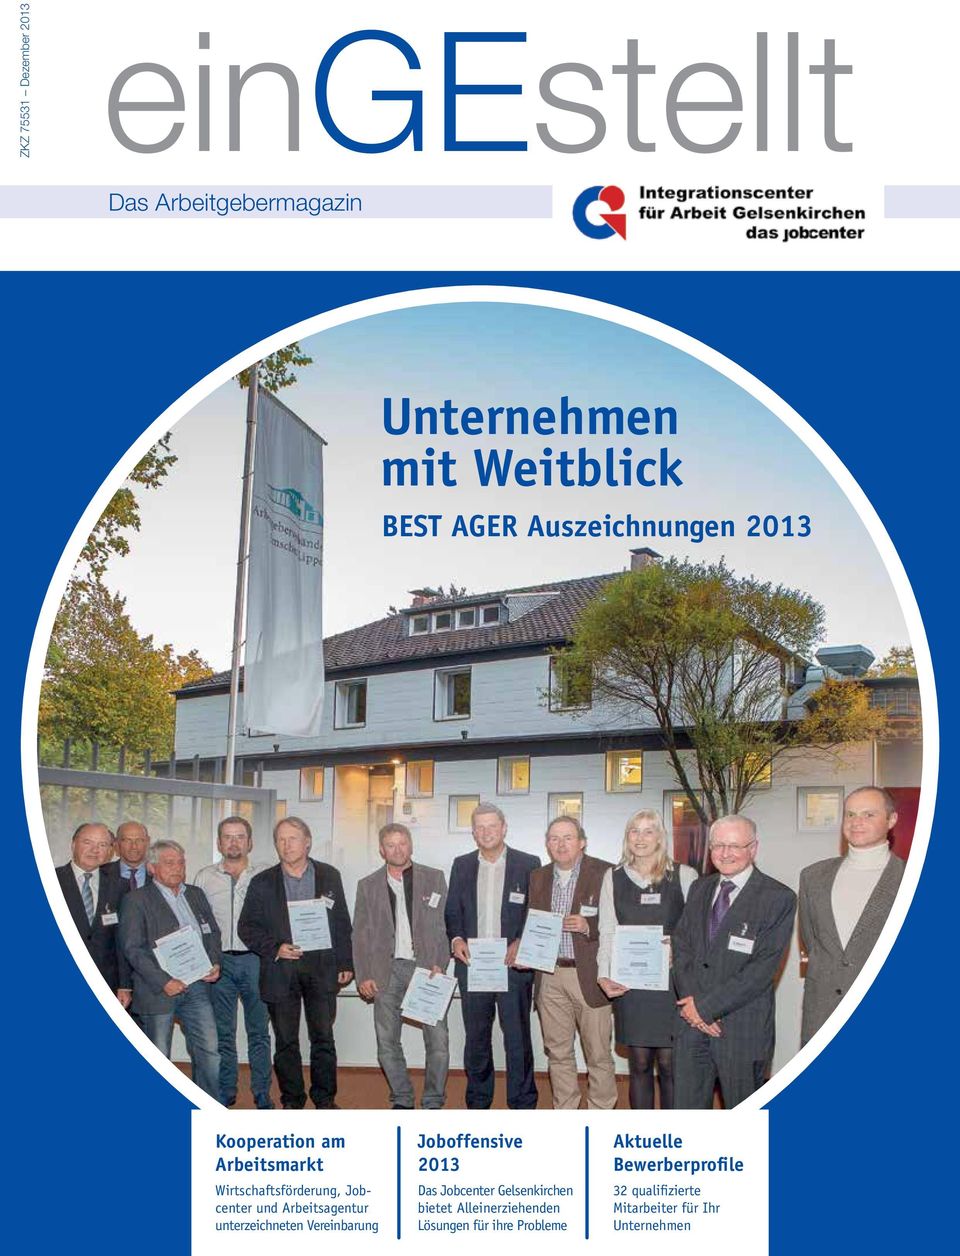 unterzeichneten Vereinbarung Joboffensive 2013 Das Jobcenter Gelsenkirchen bietet